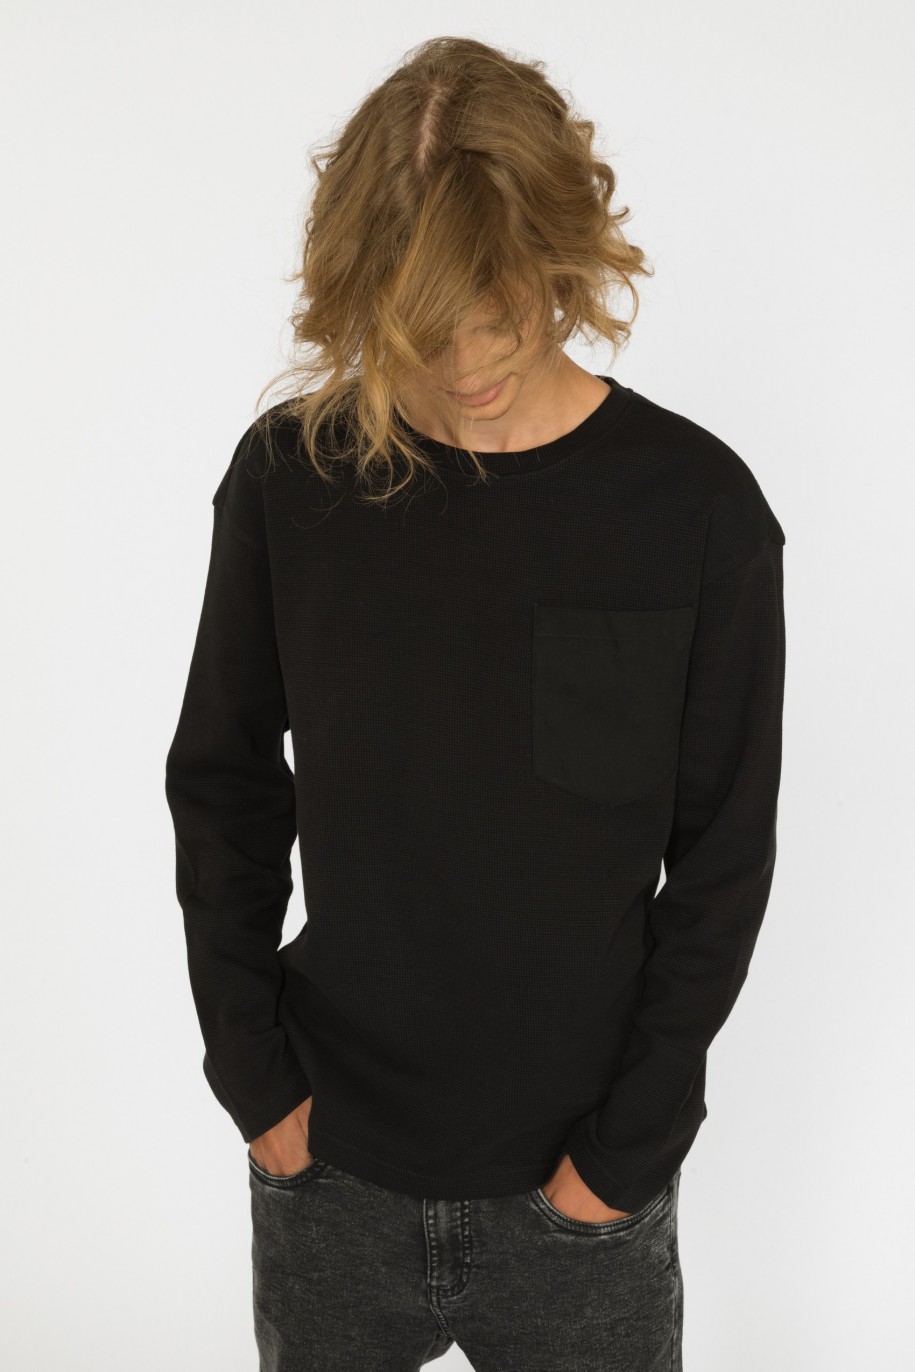 Czarny t-shirt z długim rękawem dla chłopaka - 30955